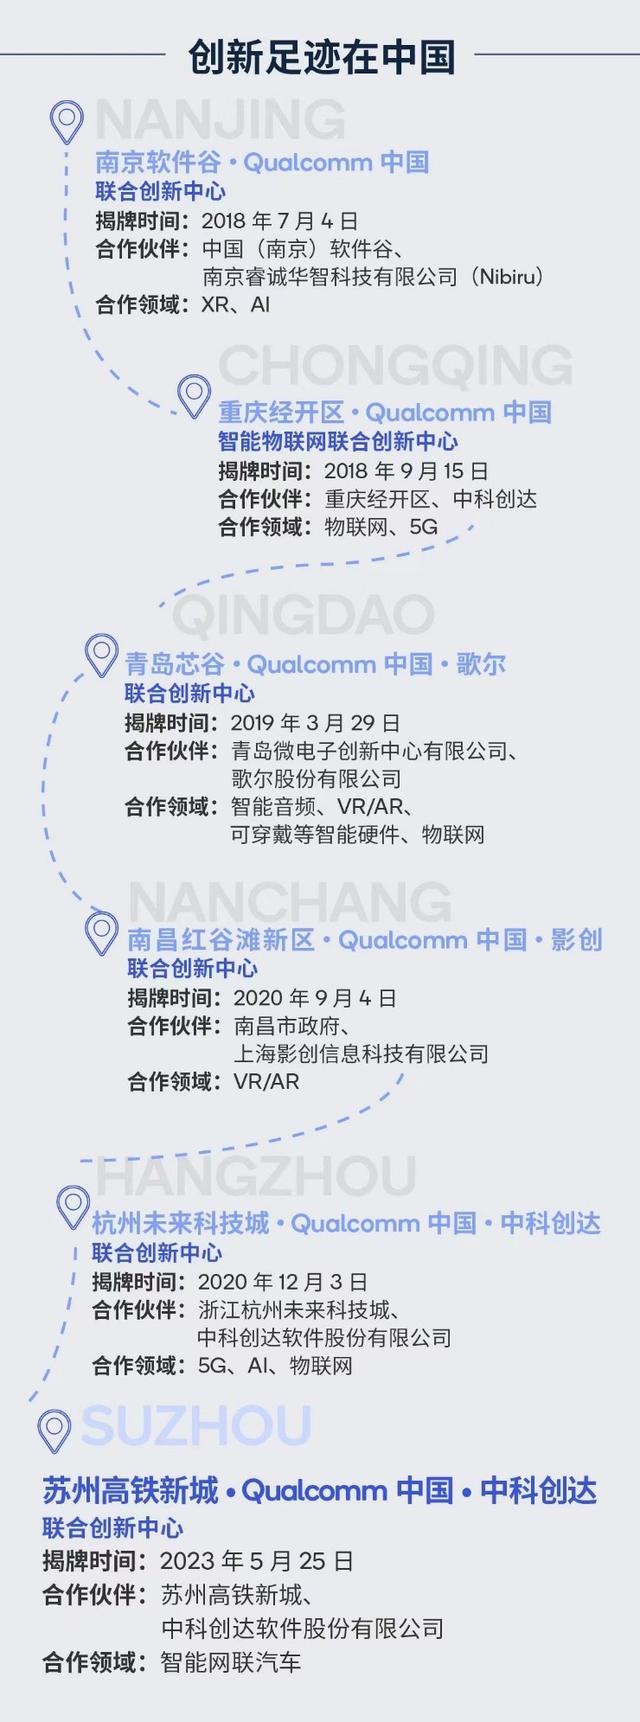 一图看懂高通在中国的六家联合创新中心